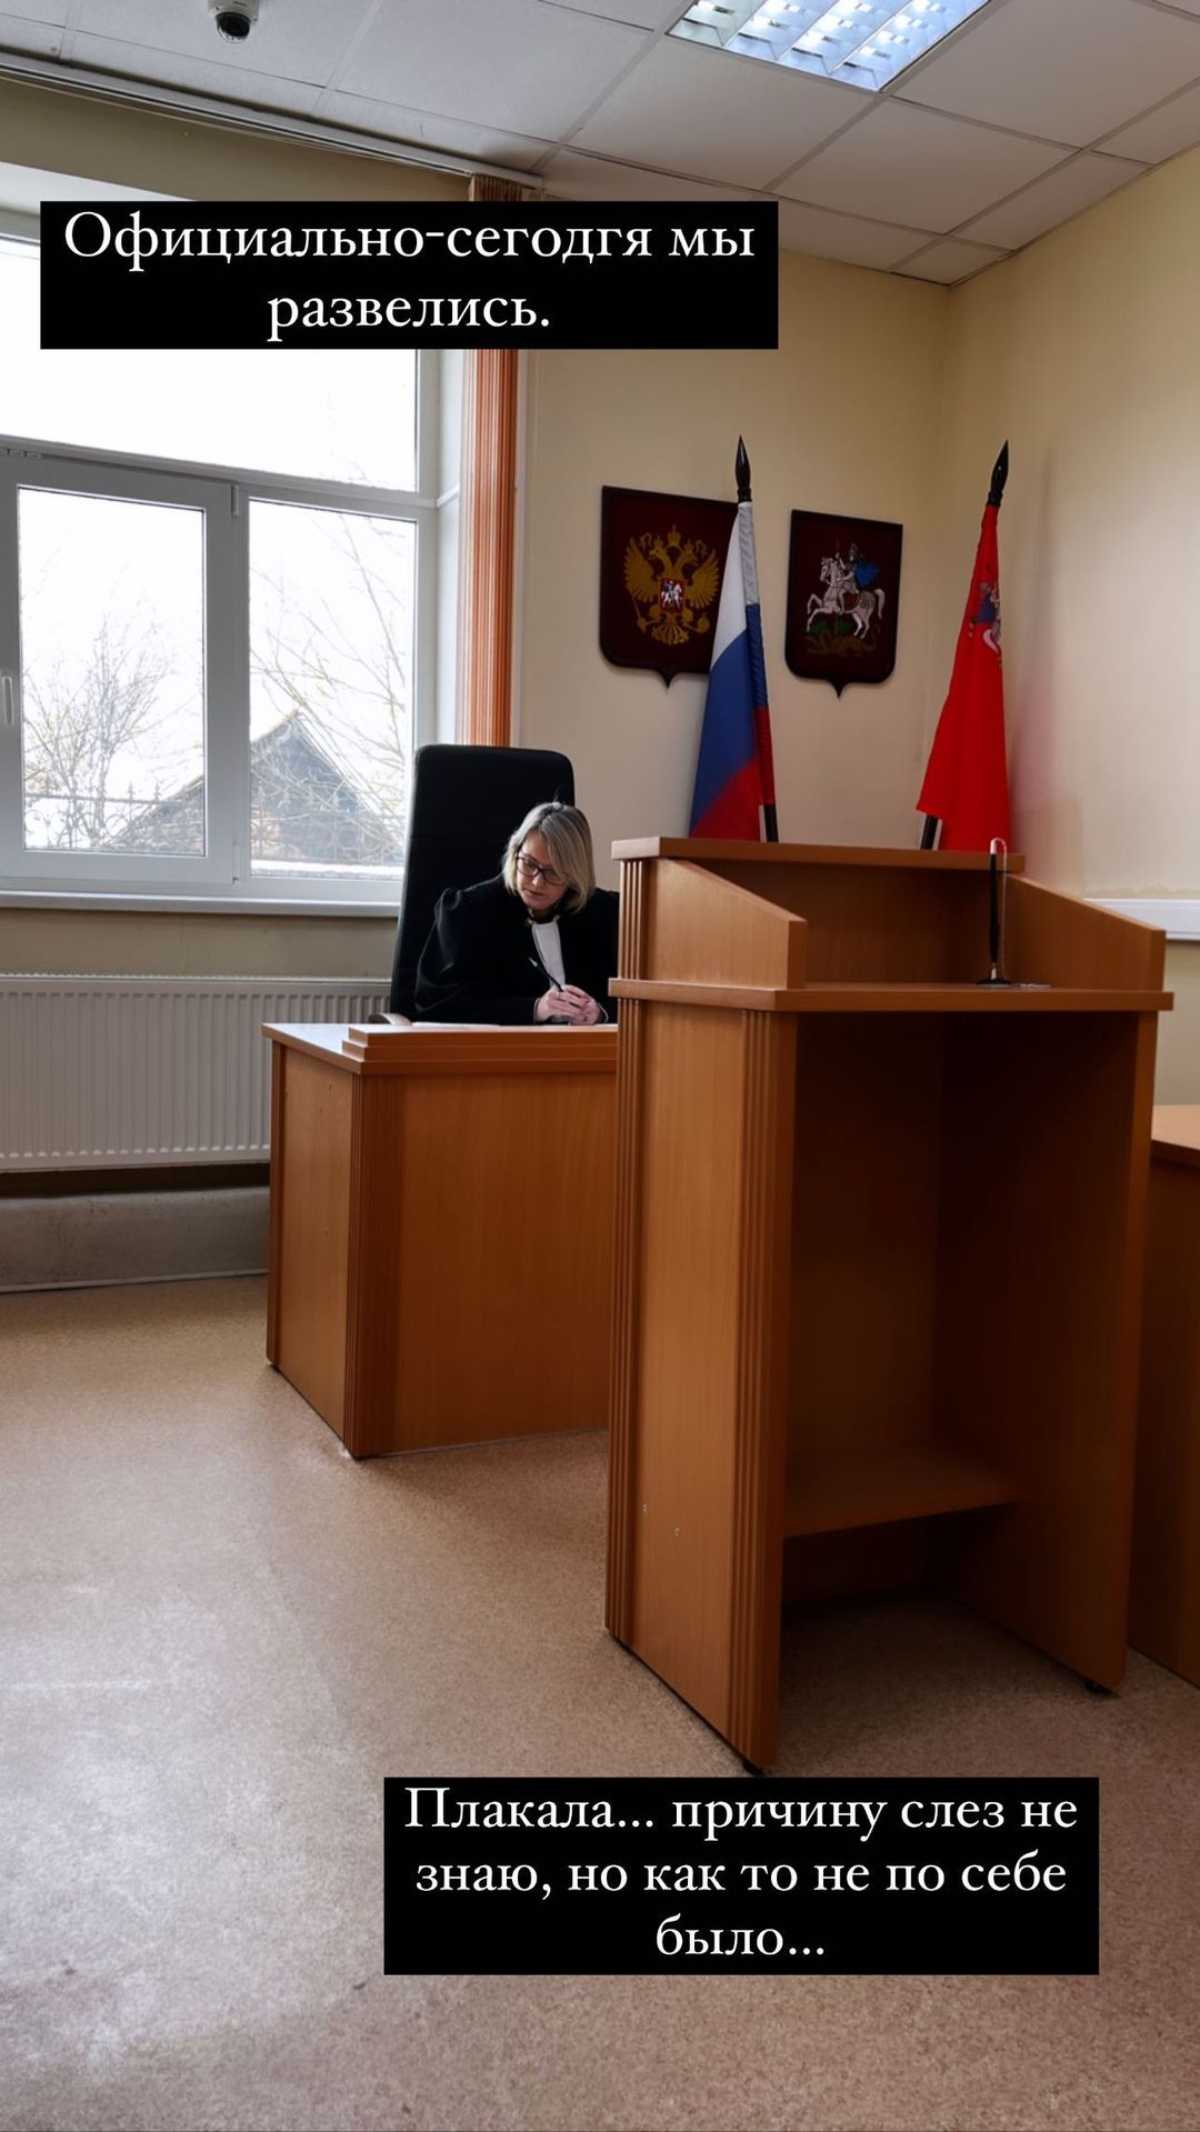 «Сегодня мы развелись»: Стриженова сделала официальное заявление